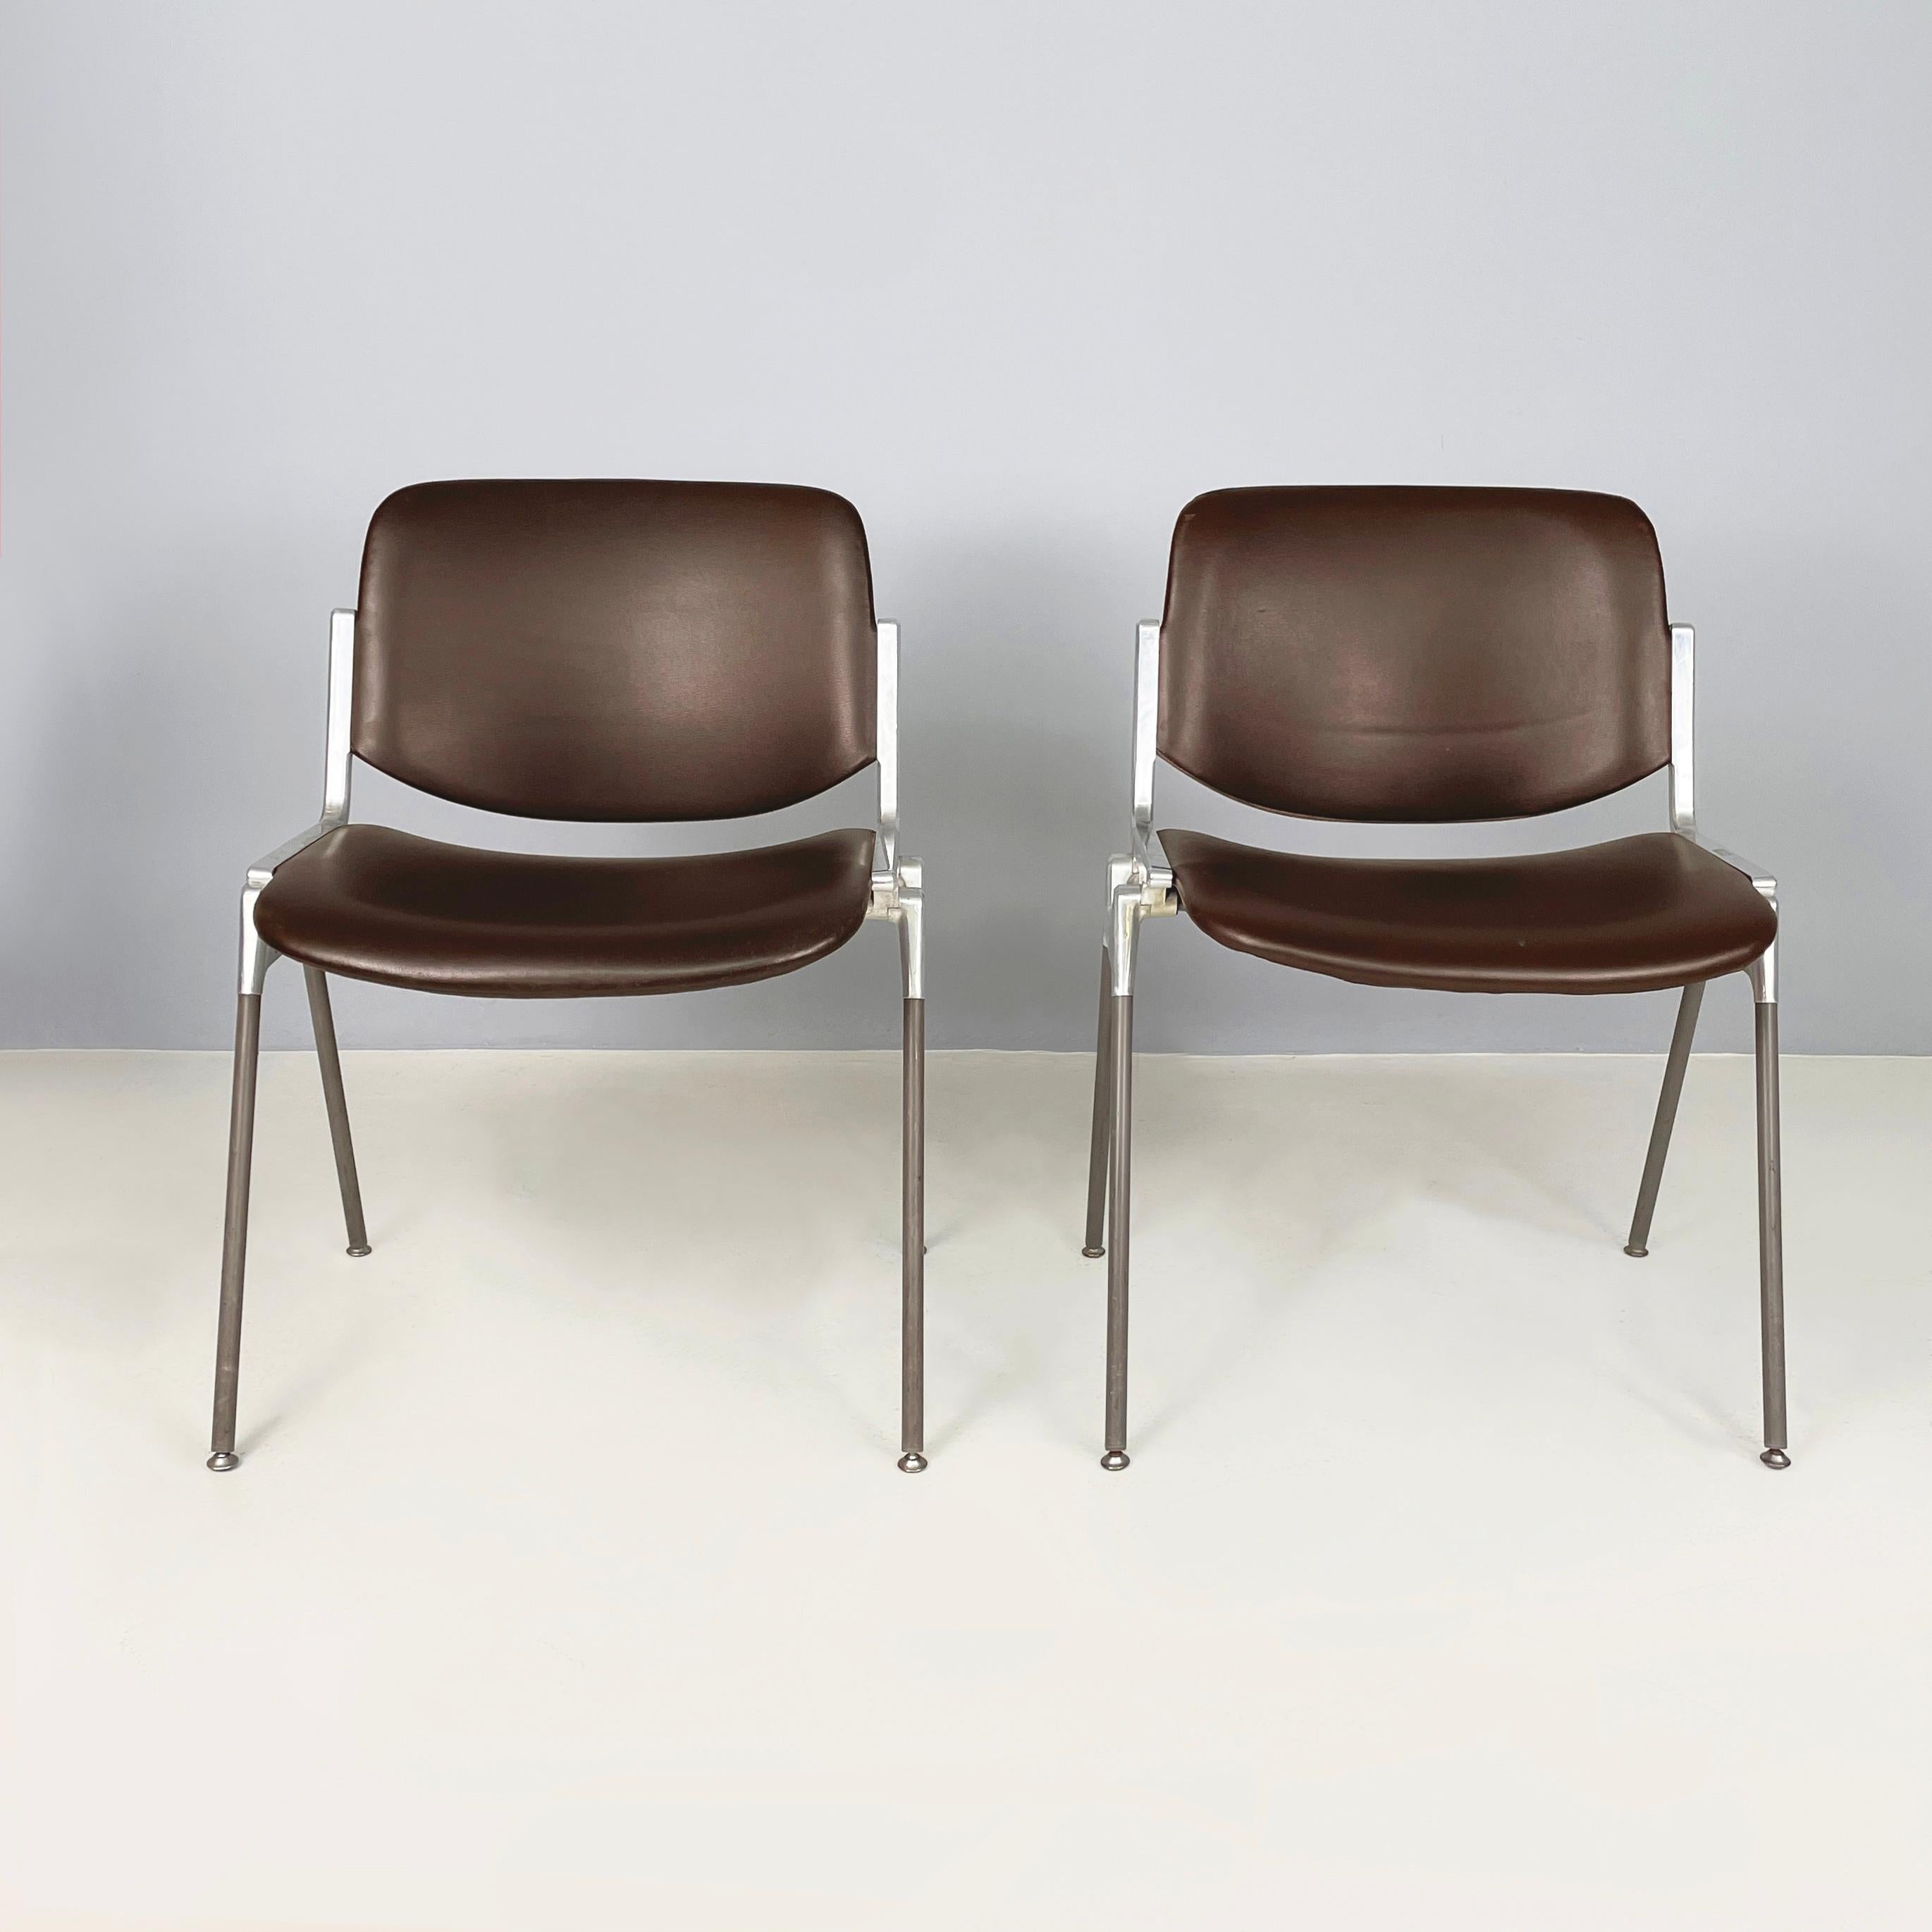 Chaises modernes italiennes DSC par Giancarlo Piretti pour Castelli, années 1970
Paire de chaises iconiques mod. DSC rembourrées et recouvertes de cuir brun foncé. L'assise et le dossier sont rectangulaires avec des coins arrondis. La structure